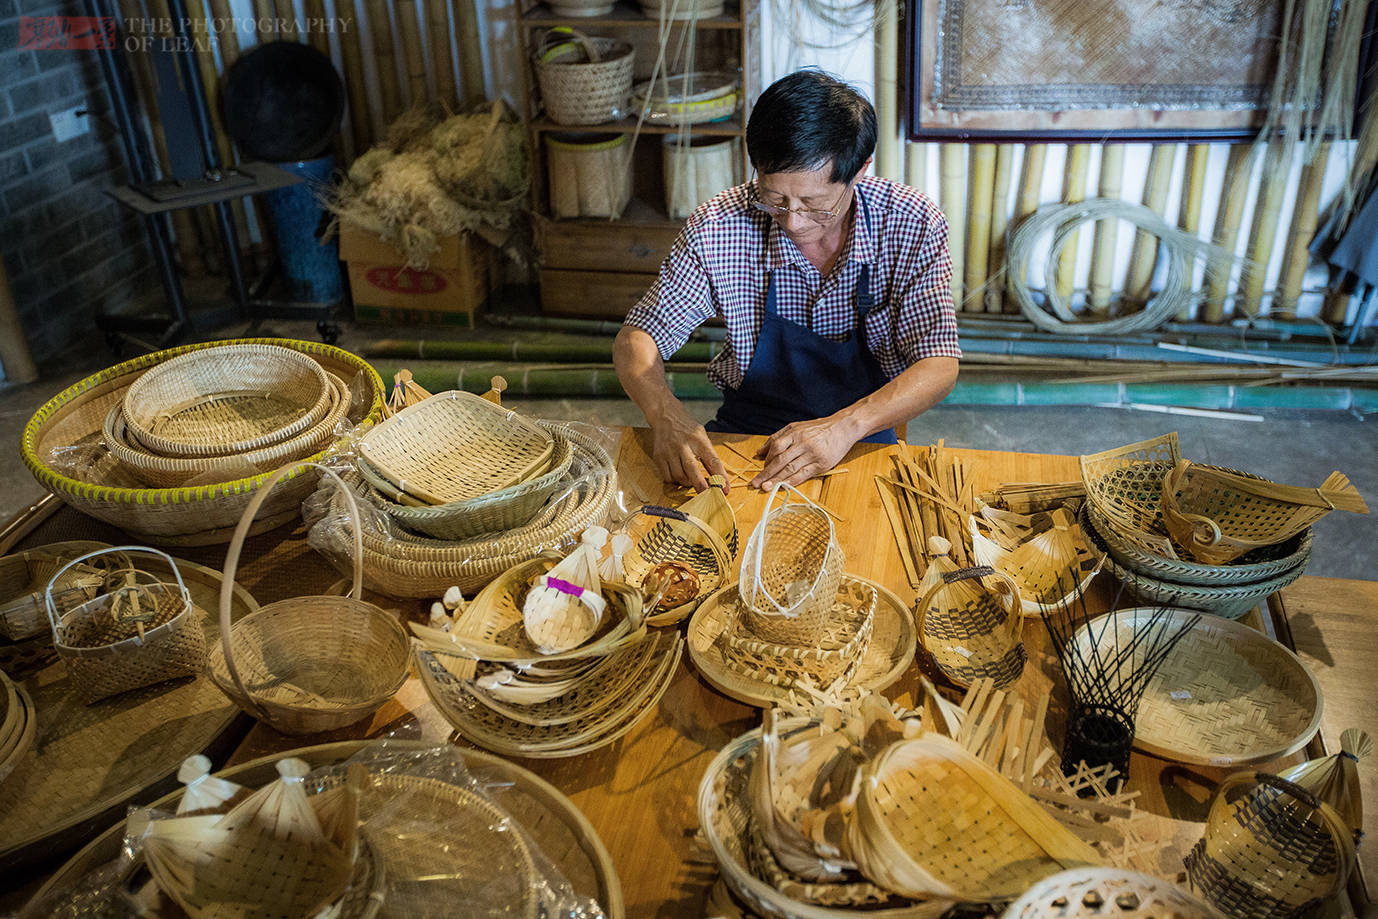 原创从50年的老篾匠到竹编工艺大师,他让传统手艺有了新出路